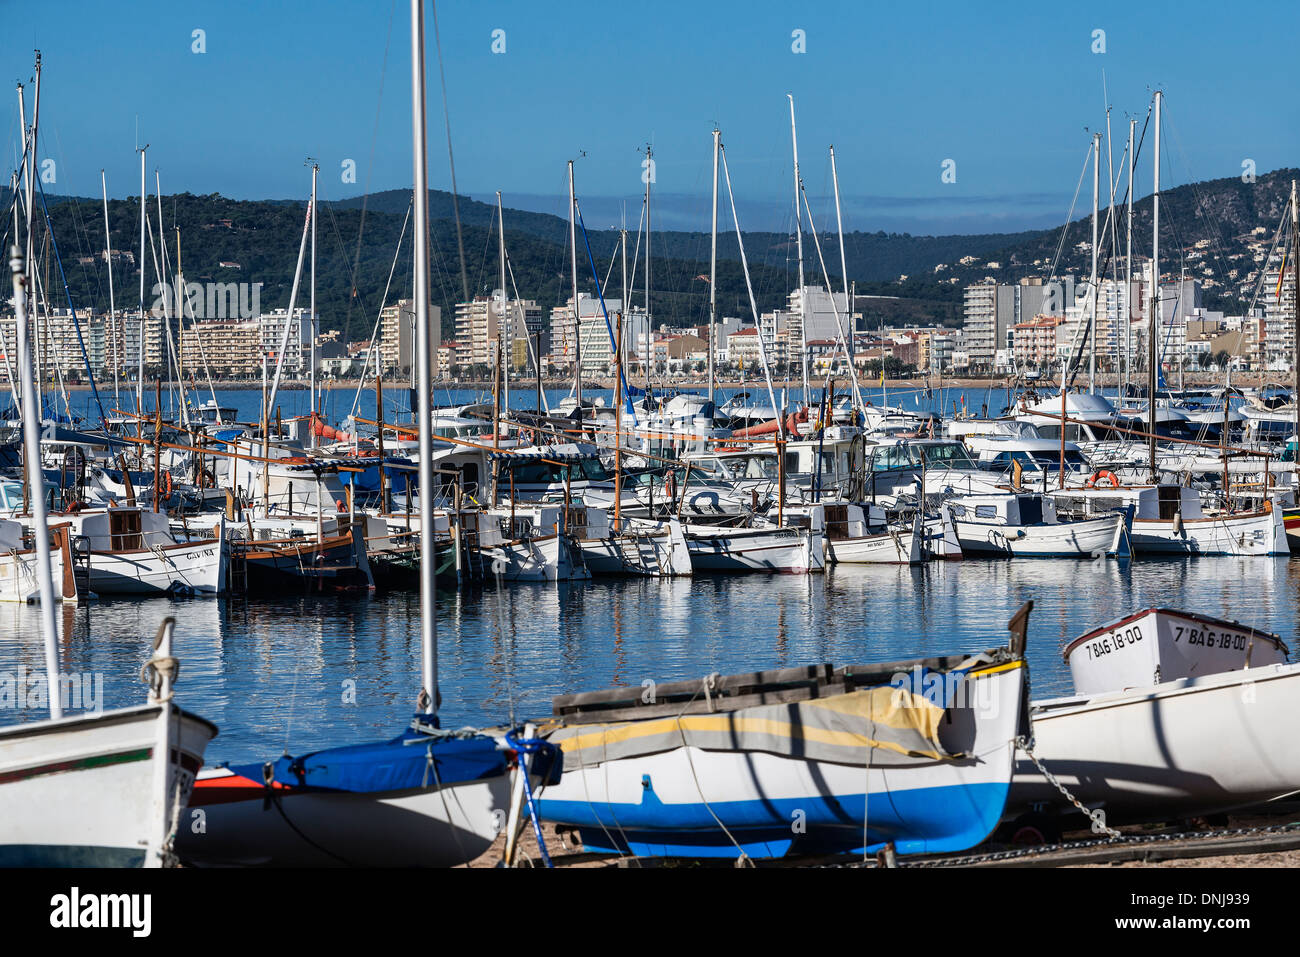 Harbor boats and city skyline, Palamos, Spain Stock Photo